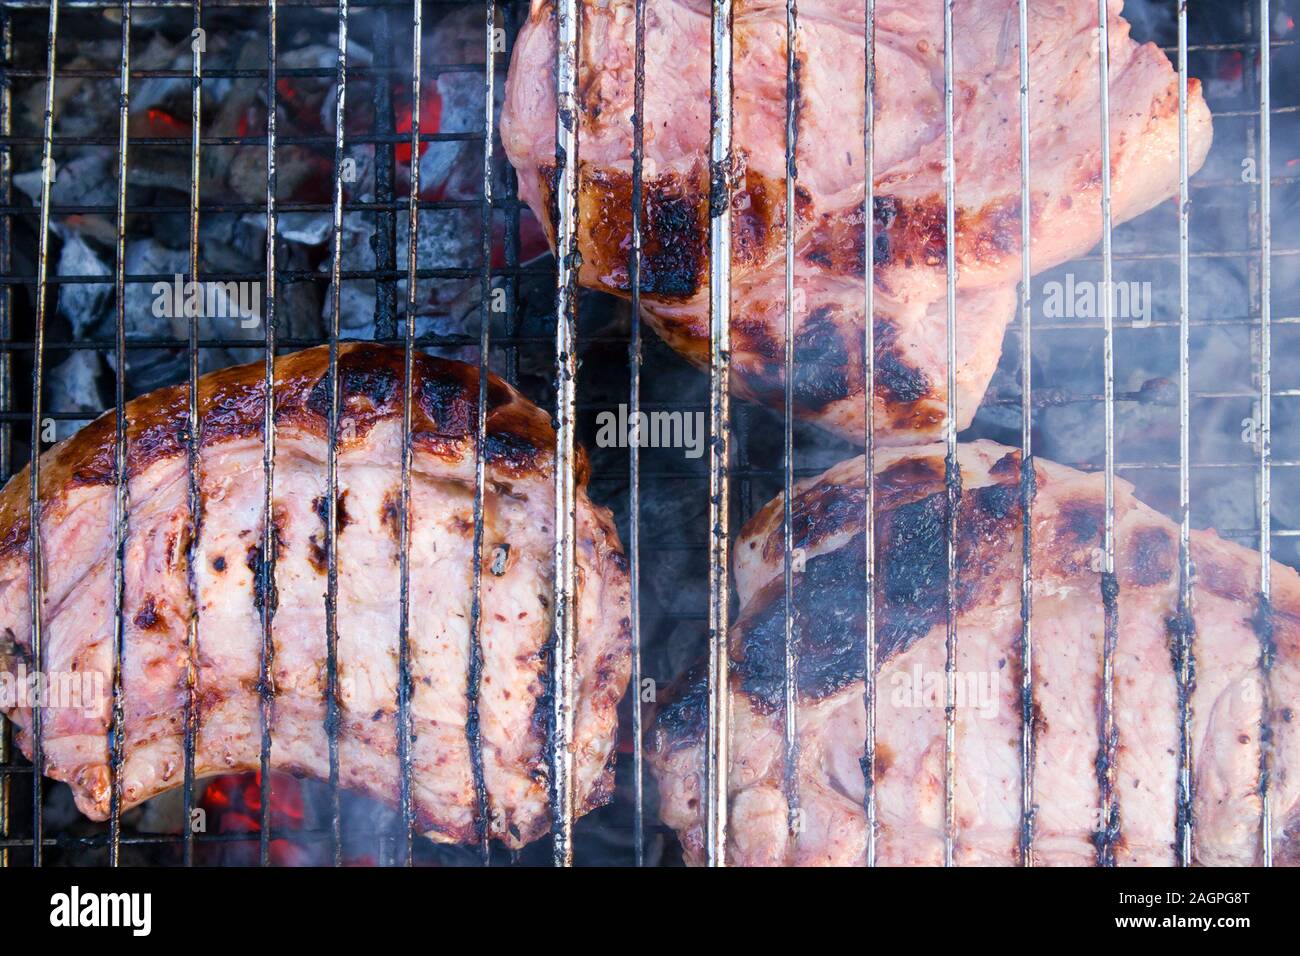 Paar Stücke etwas verbranntem Fleisch auf verkohlte Gitter mit Kohlen und Rauch unter Stockfoto